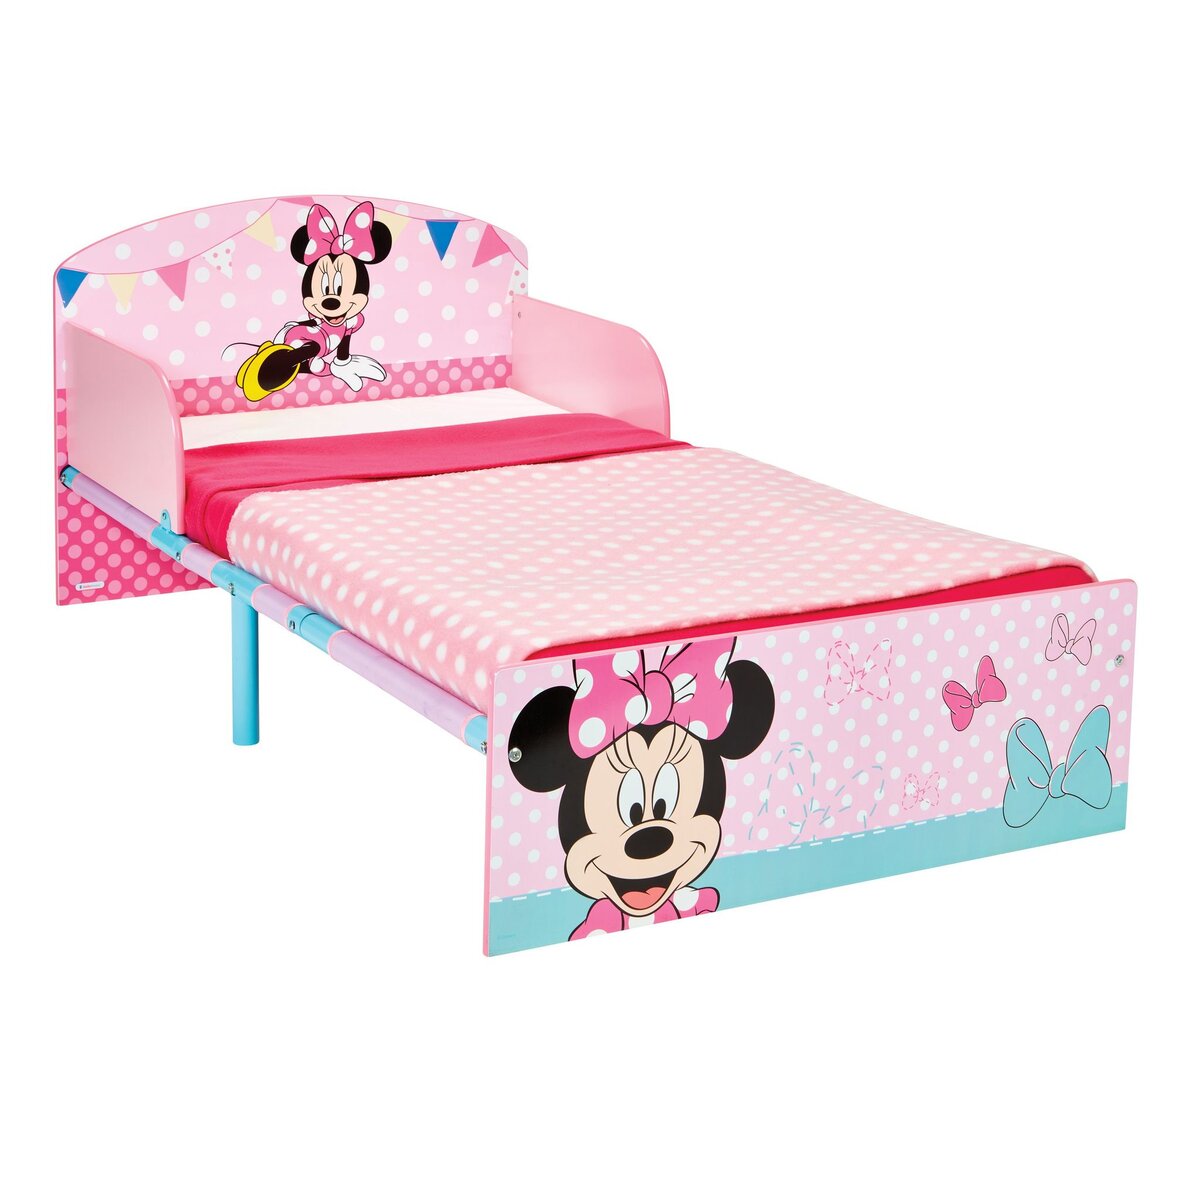  Minnie Mouse - Lit pour enfants 70 x 140 cm